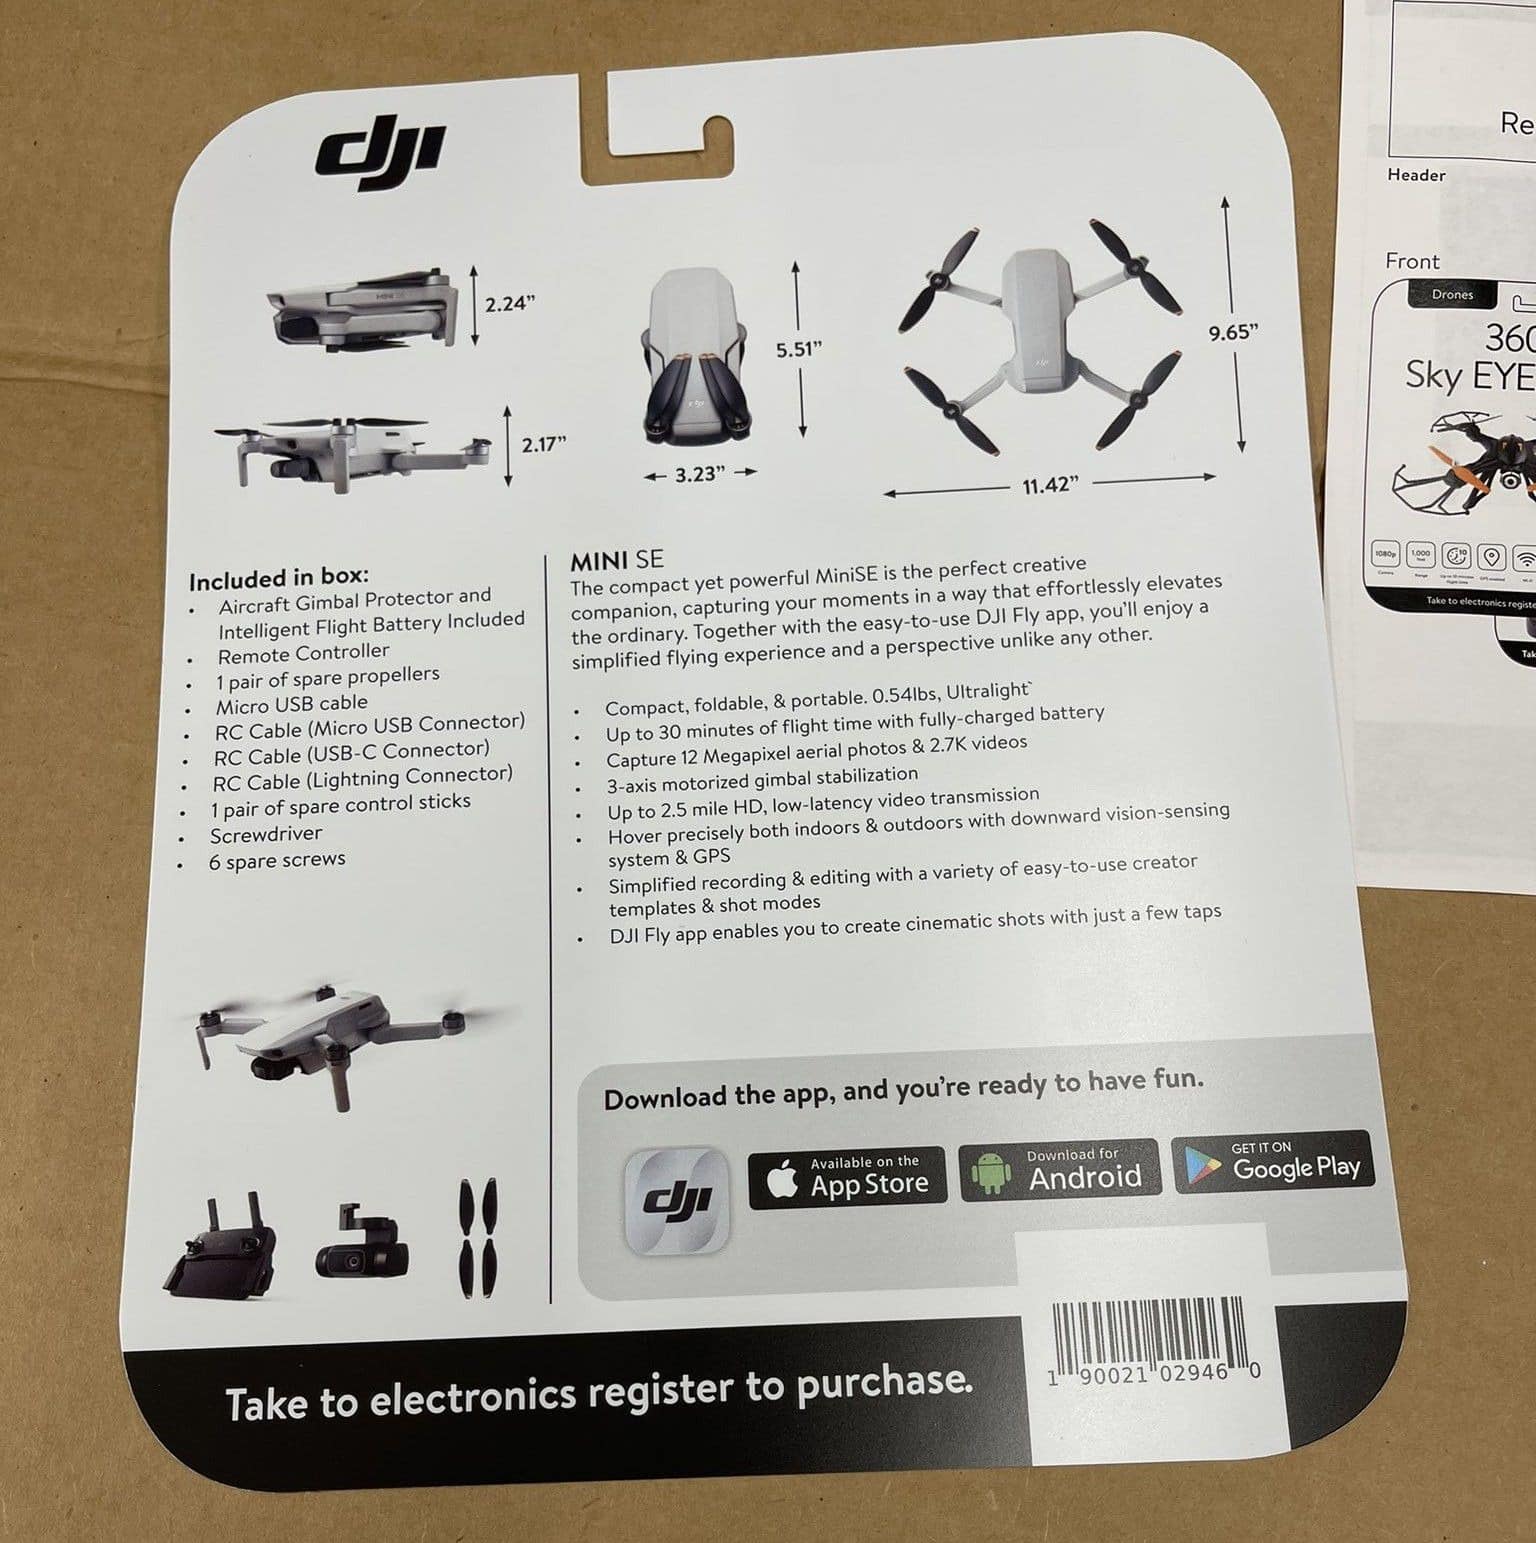 Rò rỉ thông tin về drone Mini SE, drone giá tốt nhất từ DJI cho đến nay